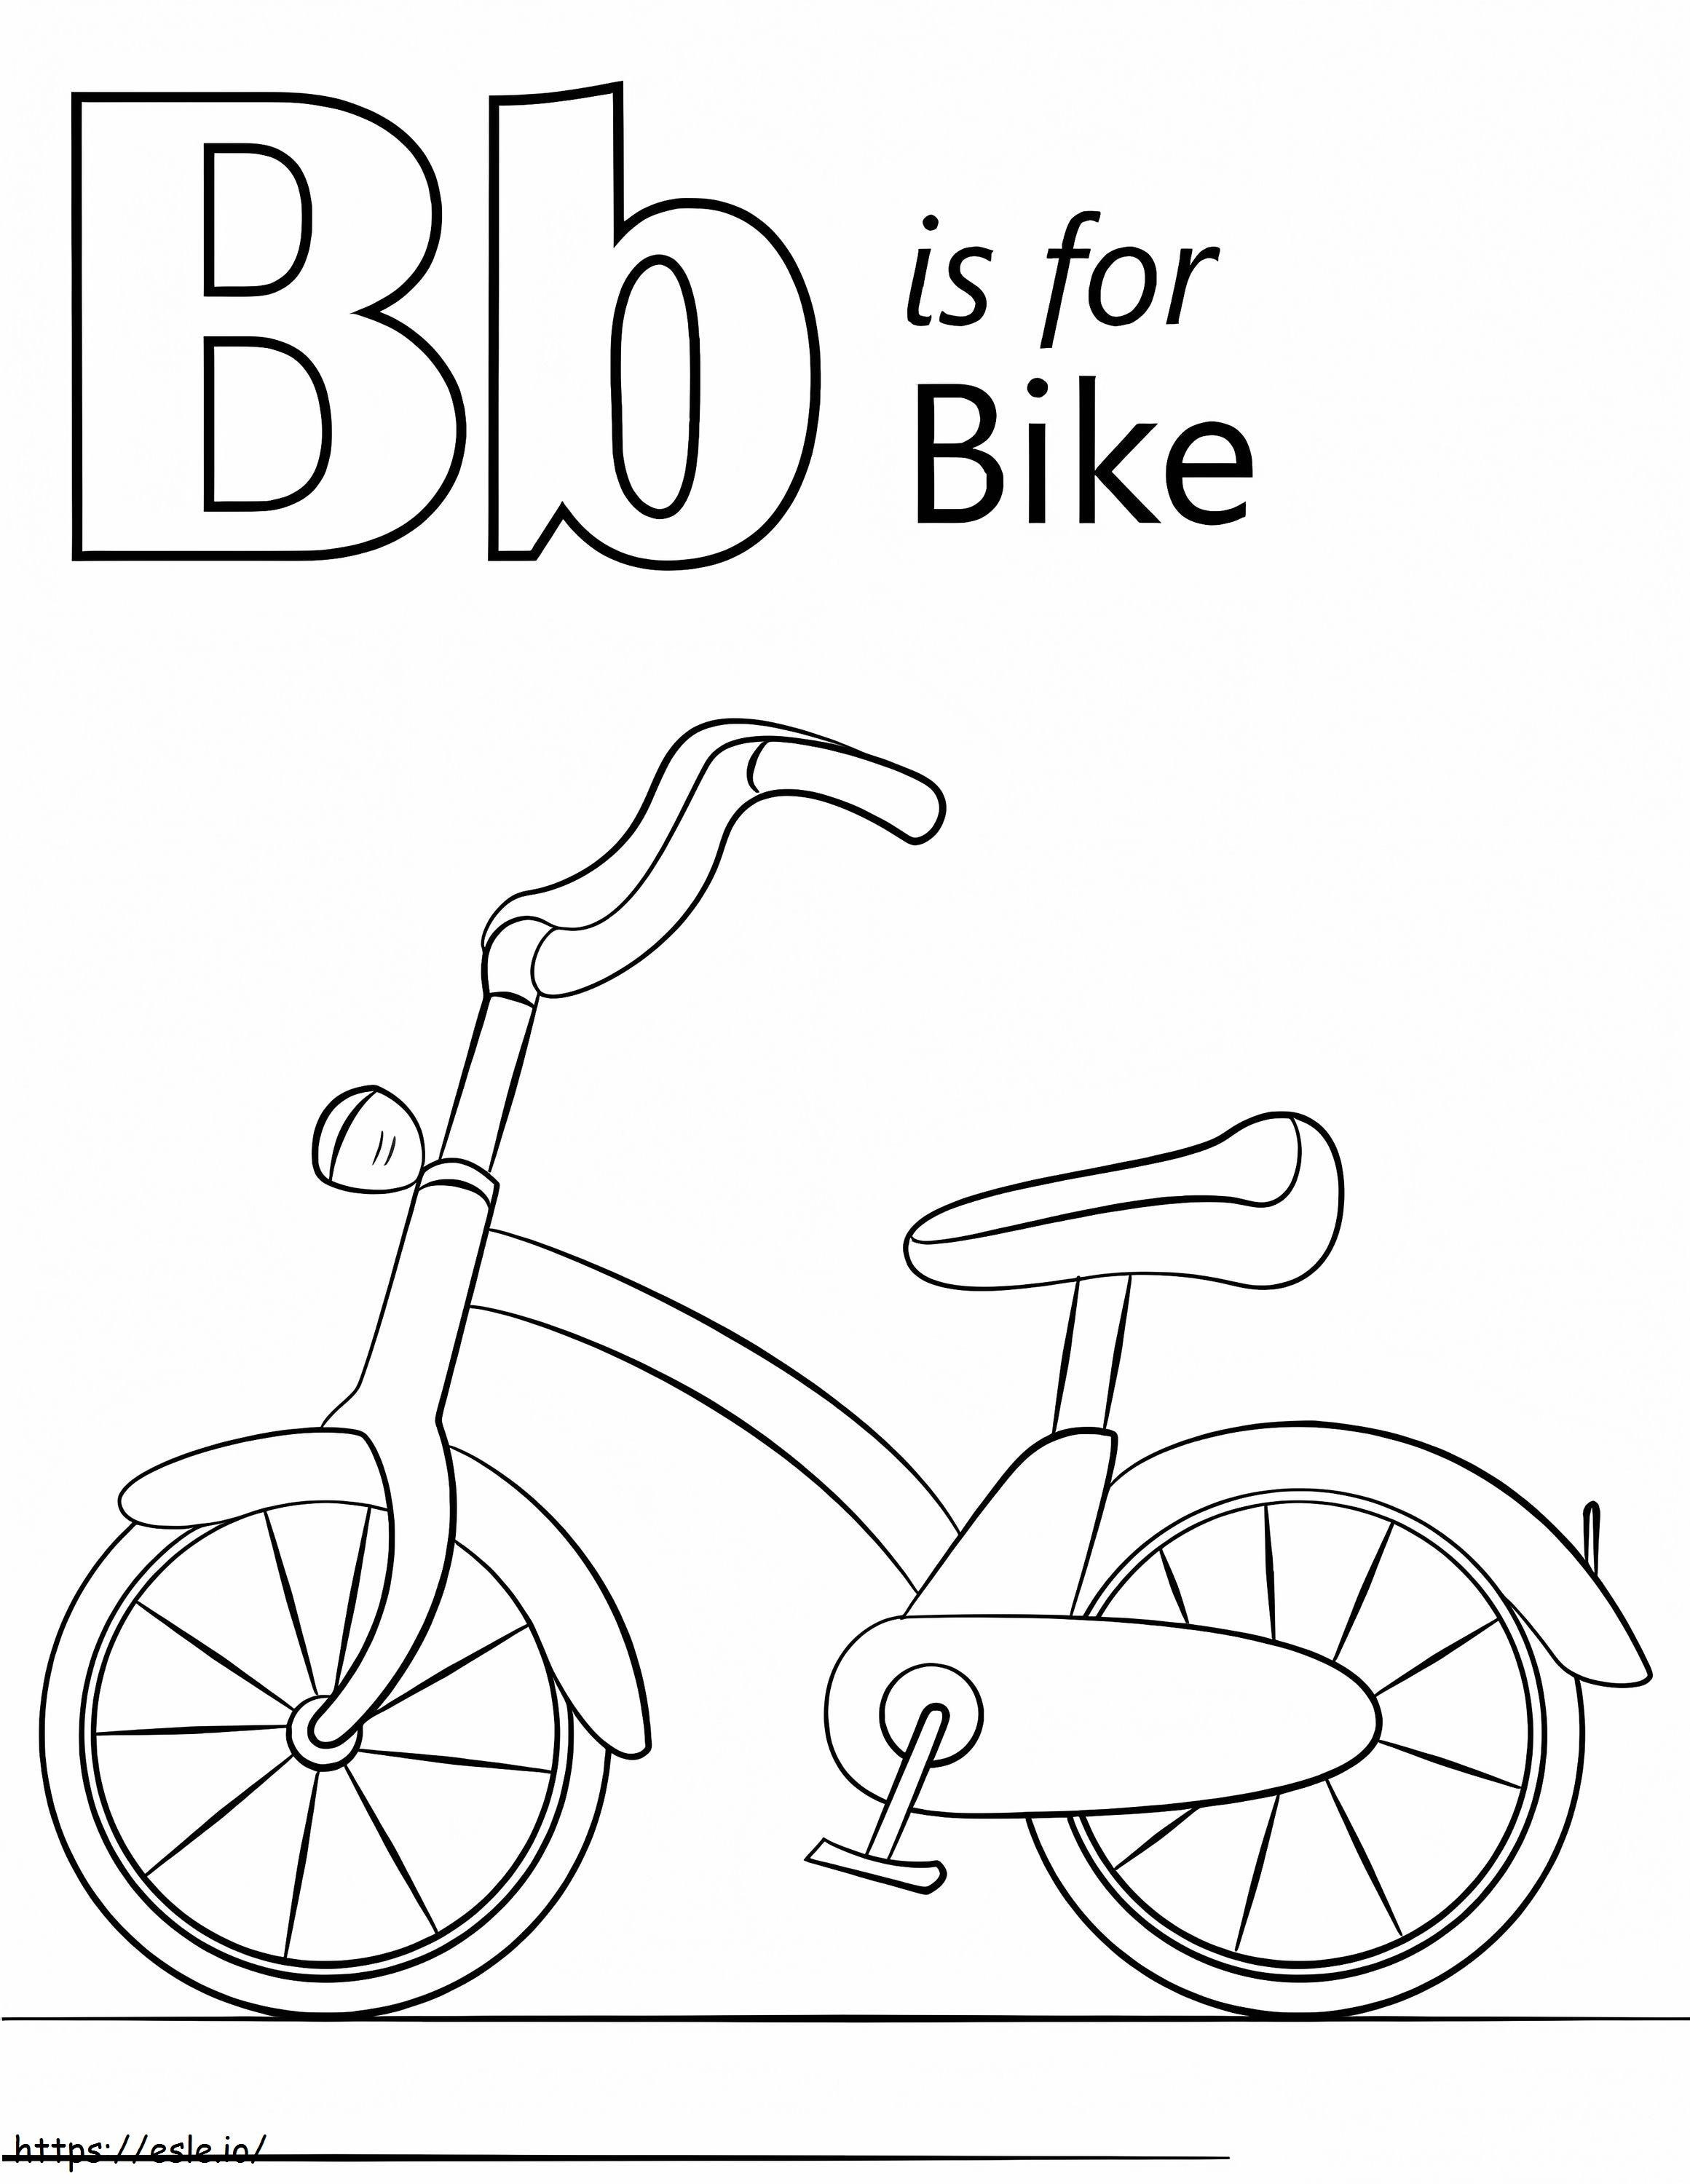 Lettera B della bicicletta da colorare